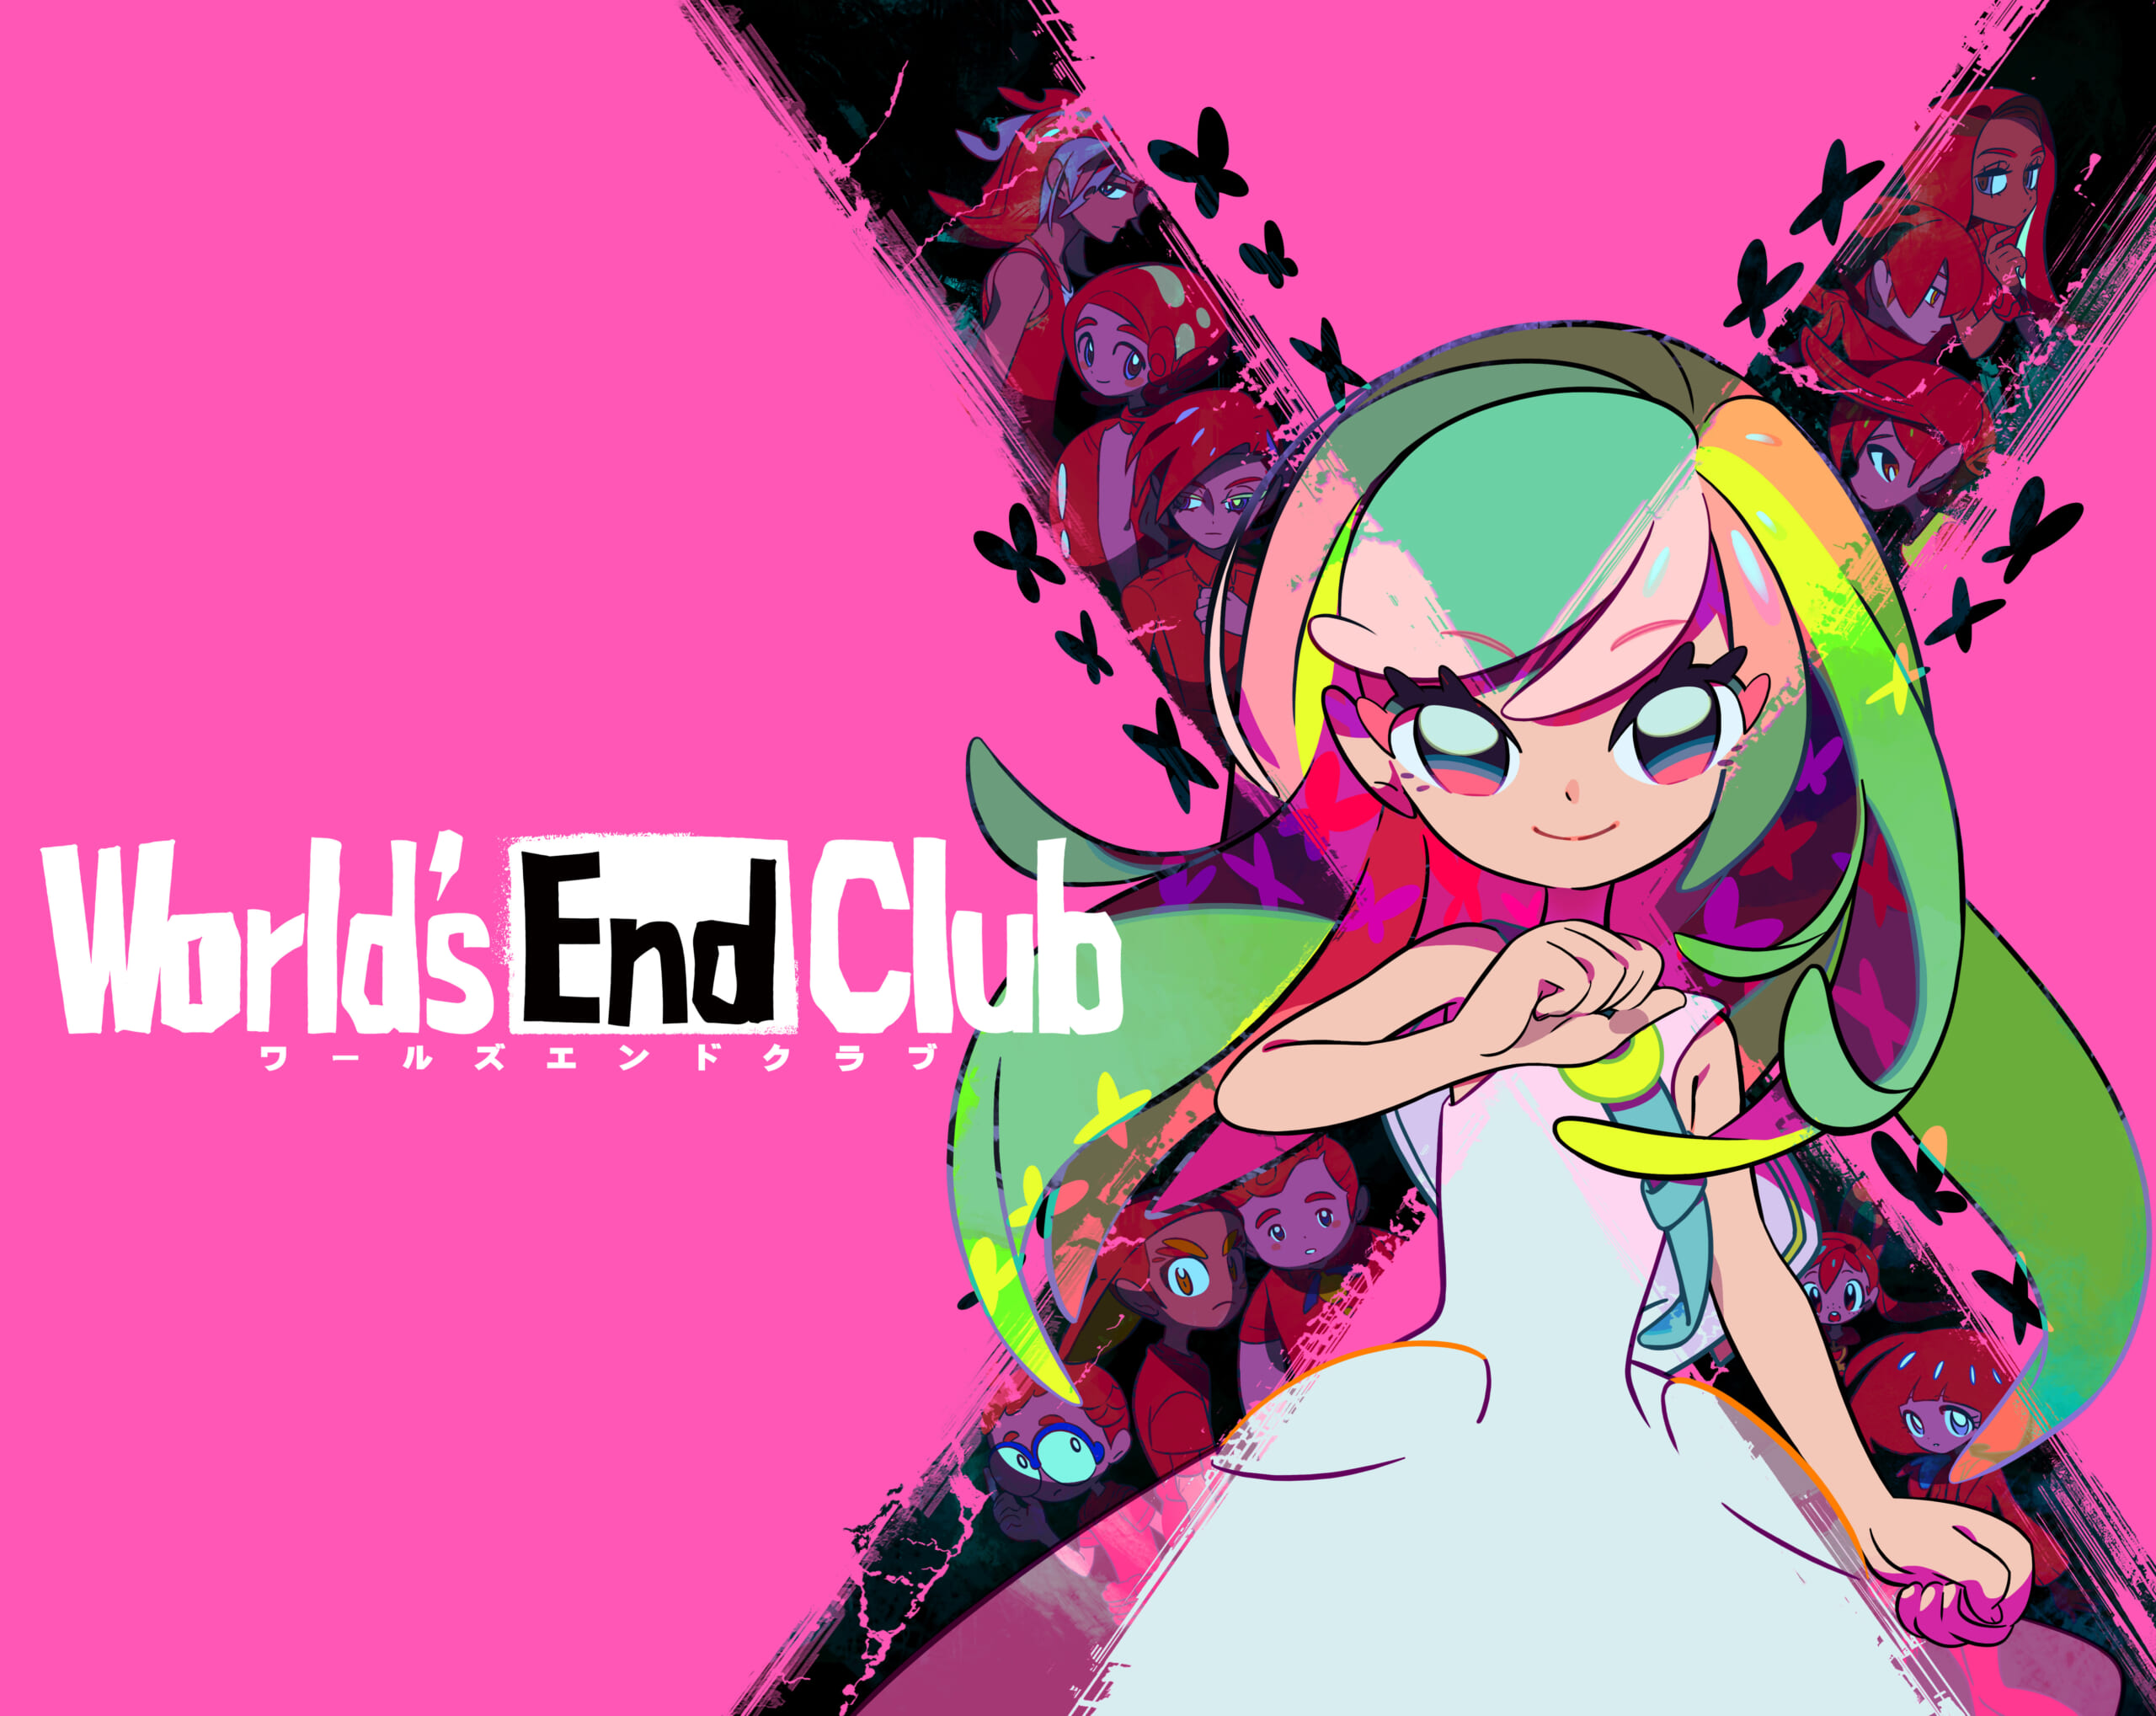 『ワールズエンドクラブ』Nintendo Switch版の予約販売が開始。12歳の少年少女たちが人の居なくなった世界を旅するサスペンスパズルアクション_004